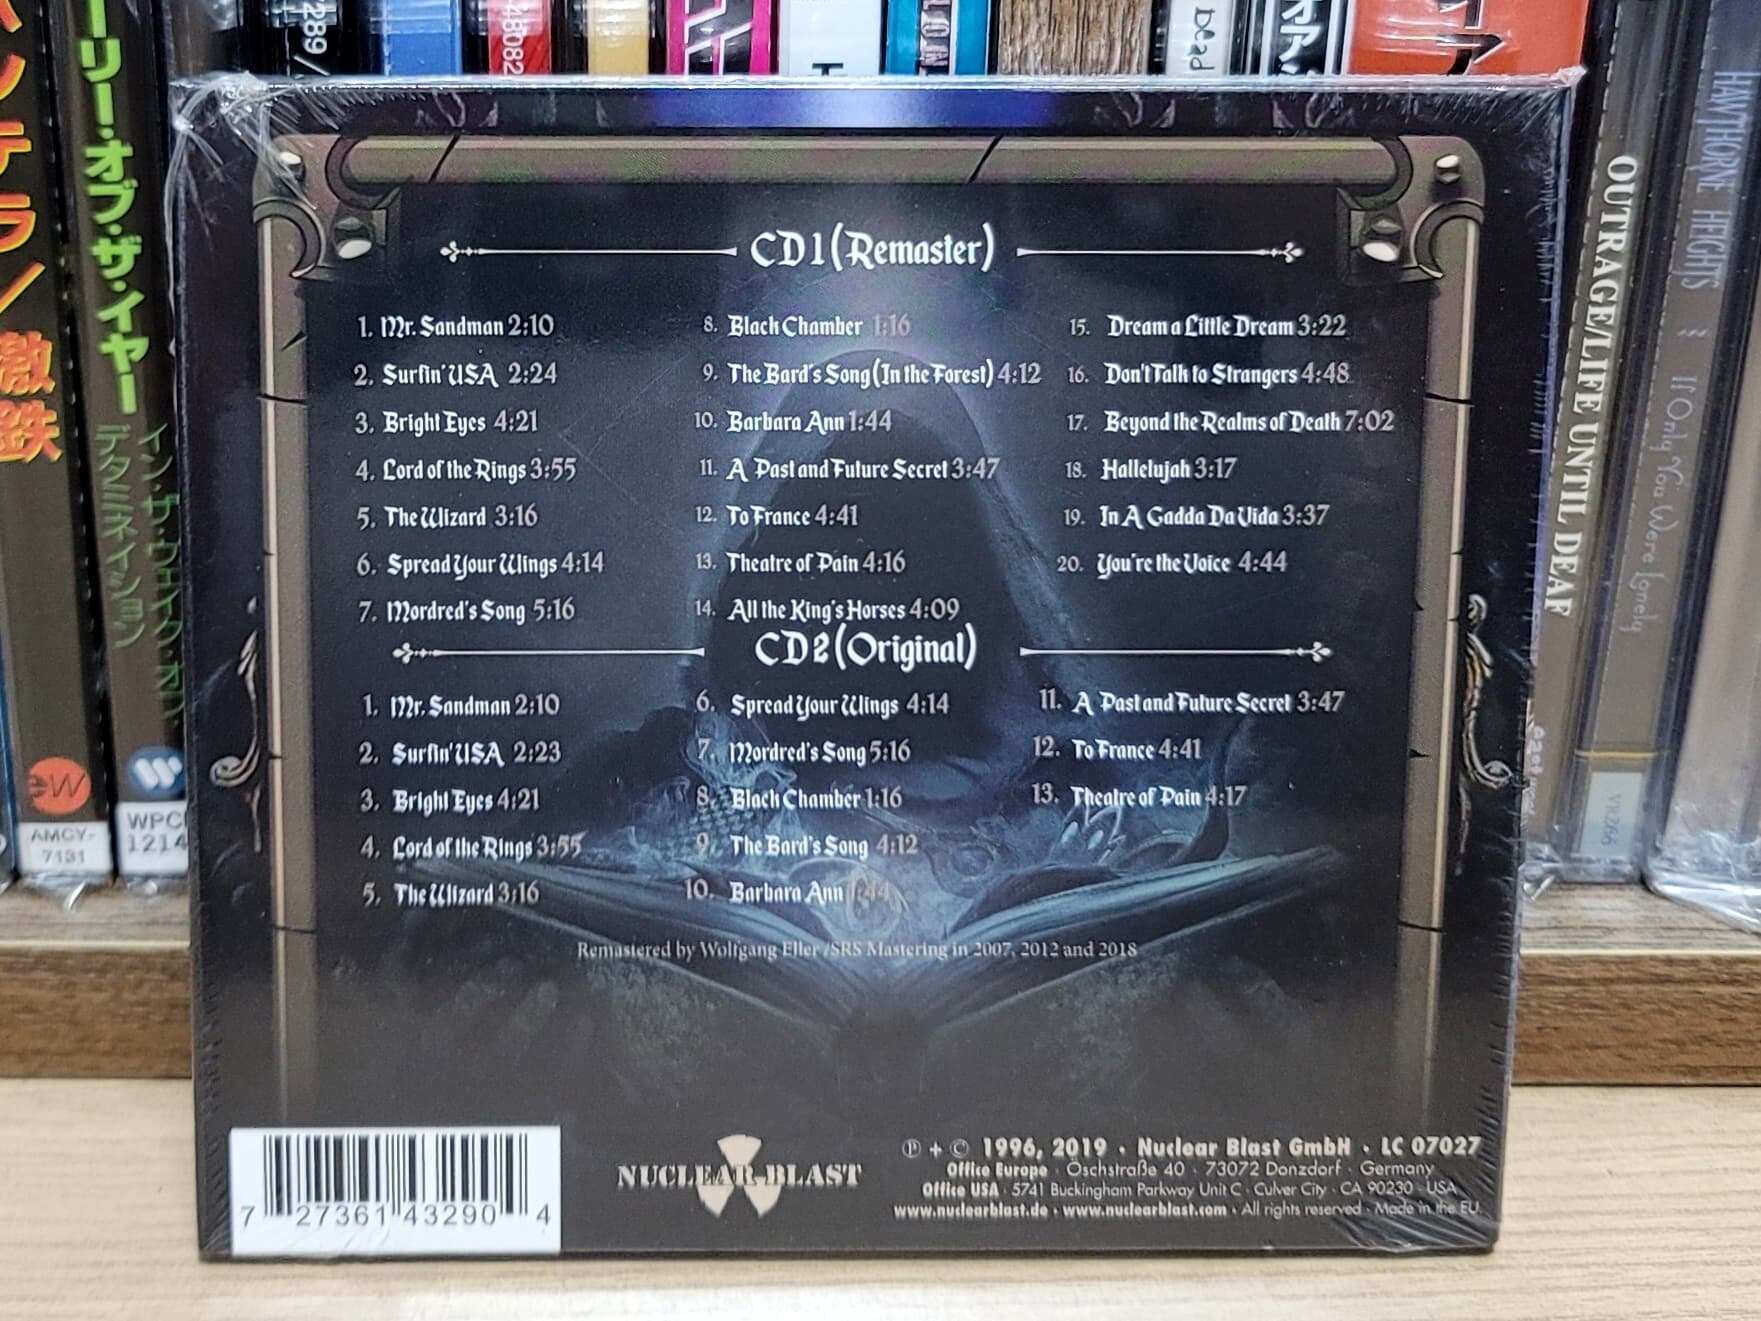 (미개봉 2CD 수입반) Blind Guardian - The Forgotten Tales (Remastered 2012)